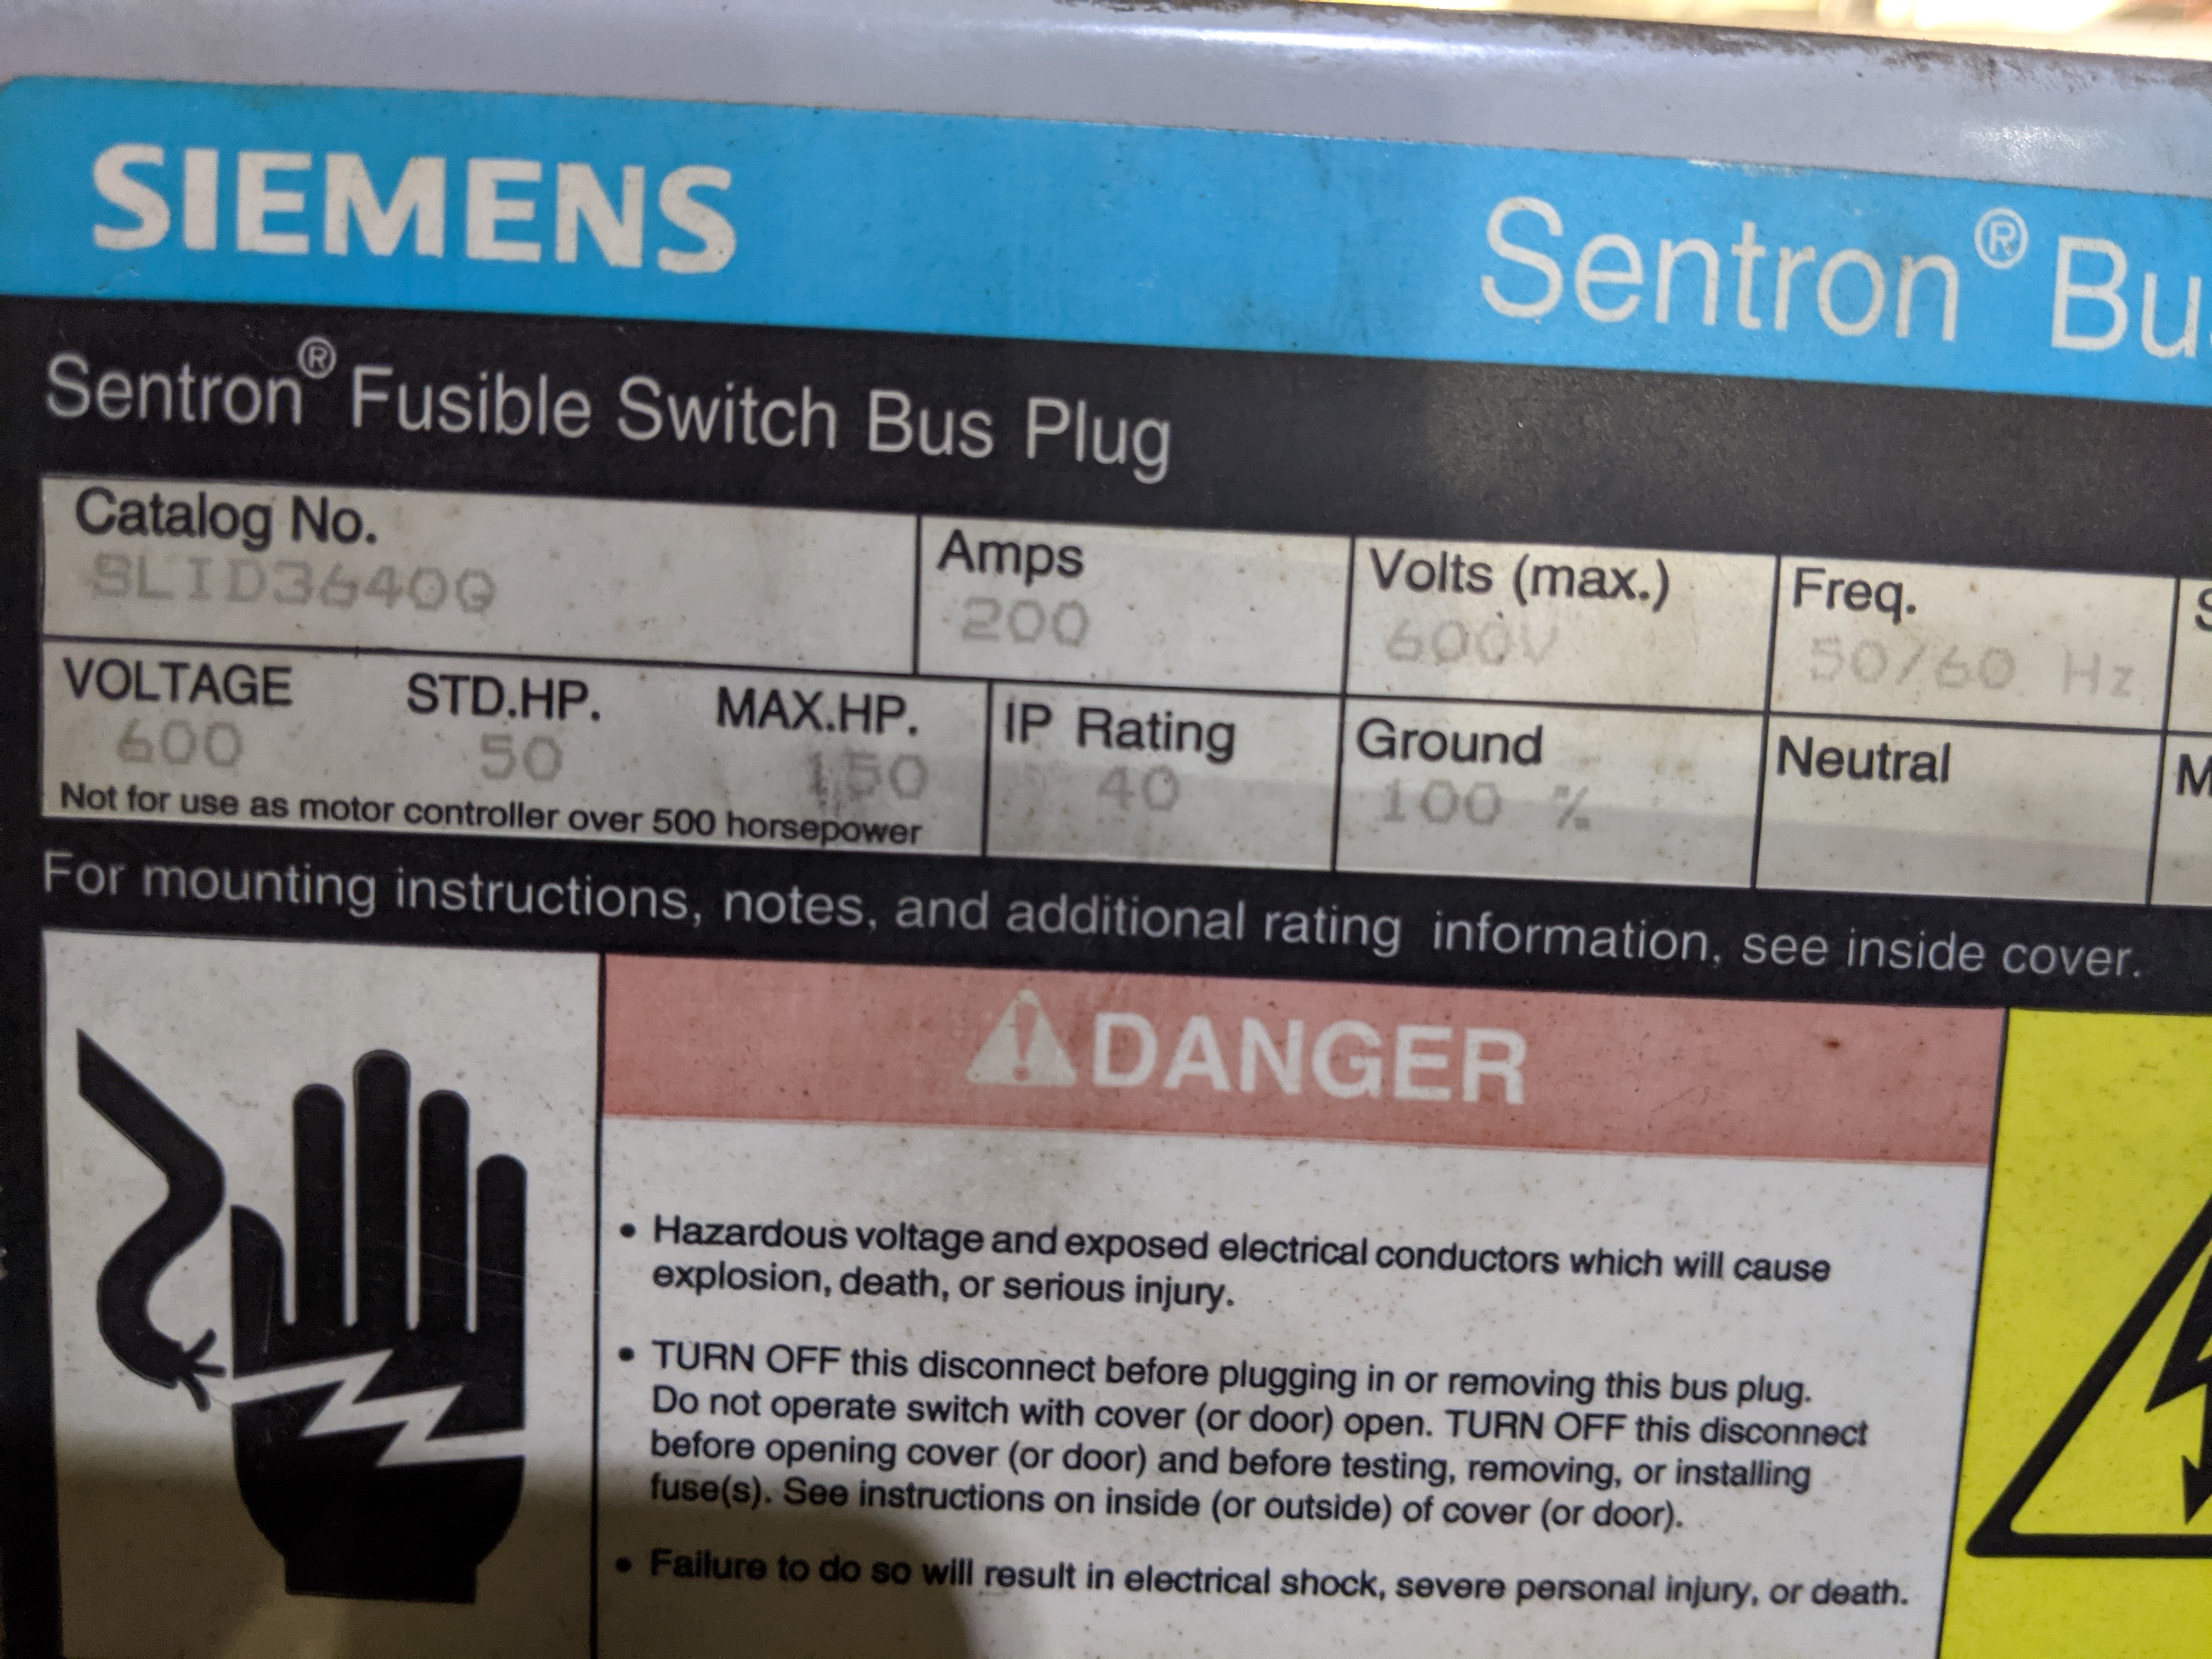 Siemens 200 Amp Bus Plug SLID3640G